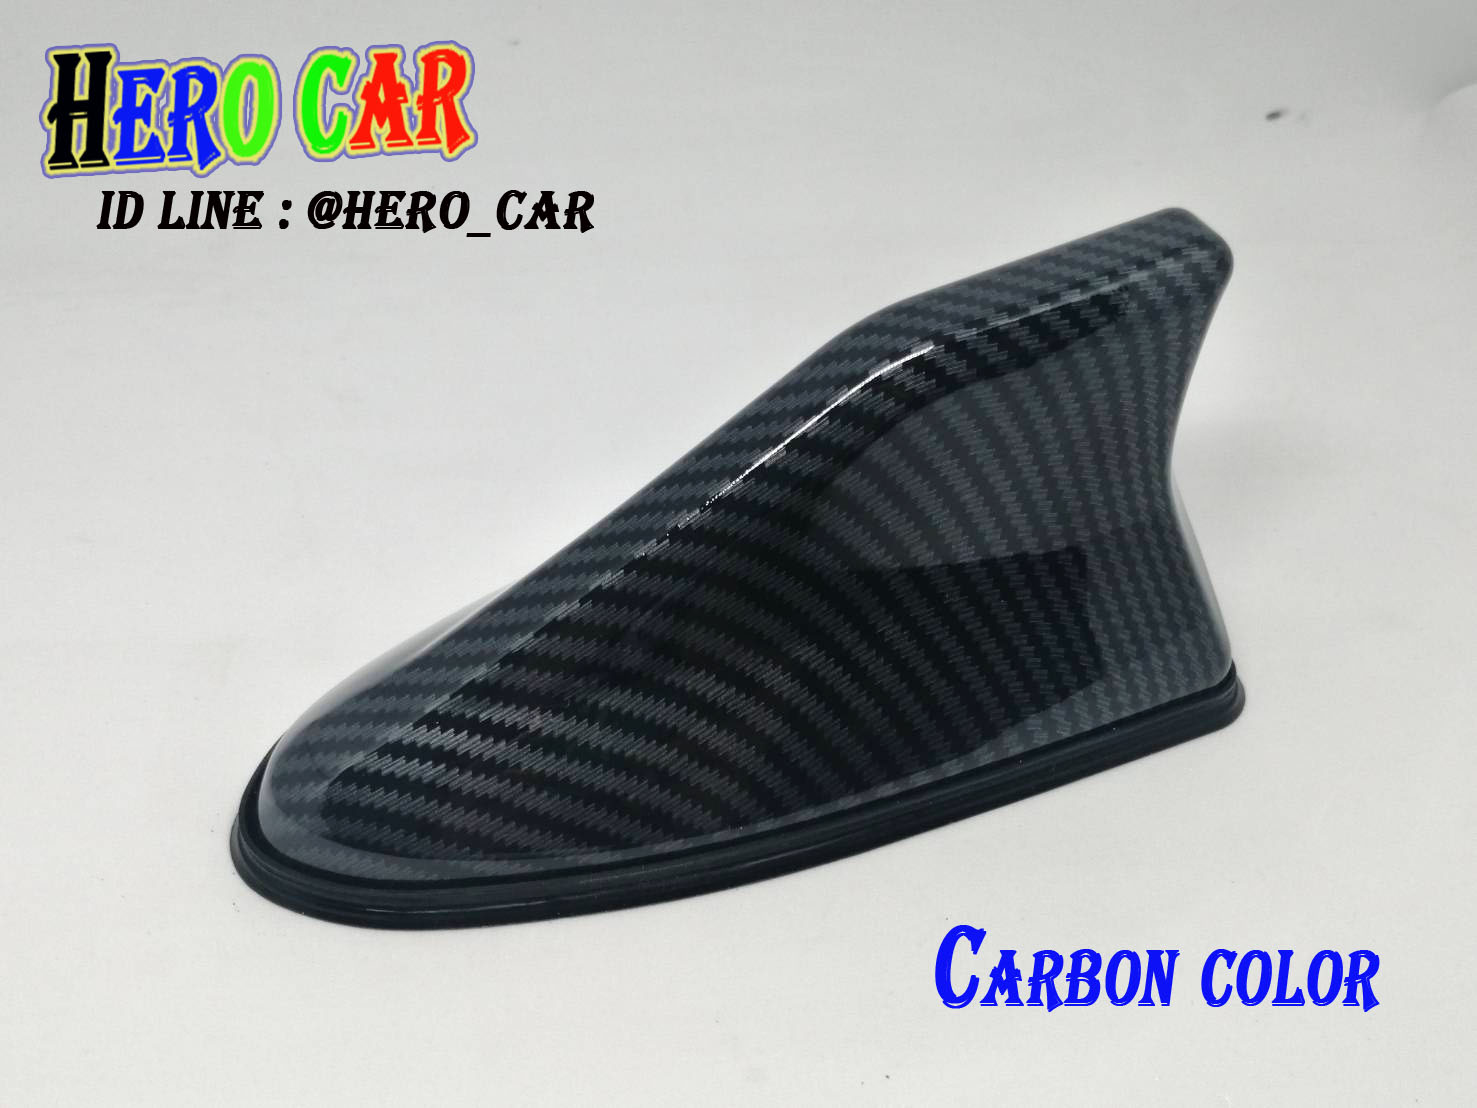 เสาฉลาม JS RACING  สีเคฟล่า  Carbon color  เสาอากาศ วิทยุ ครีบฉลาม FM / AM สำหรับติดรถยนต์ รับสัญญาณได้ดี มียางรอง ใส่ได้ทุกรุ่น